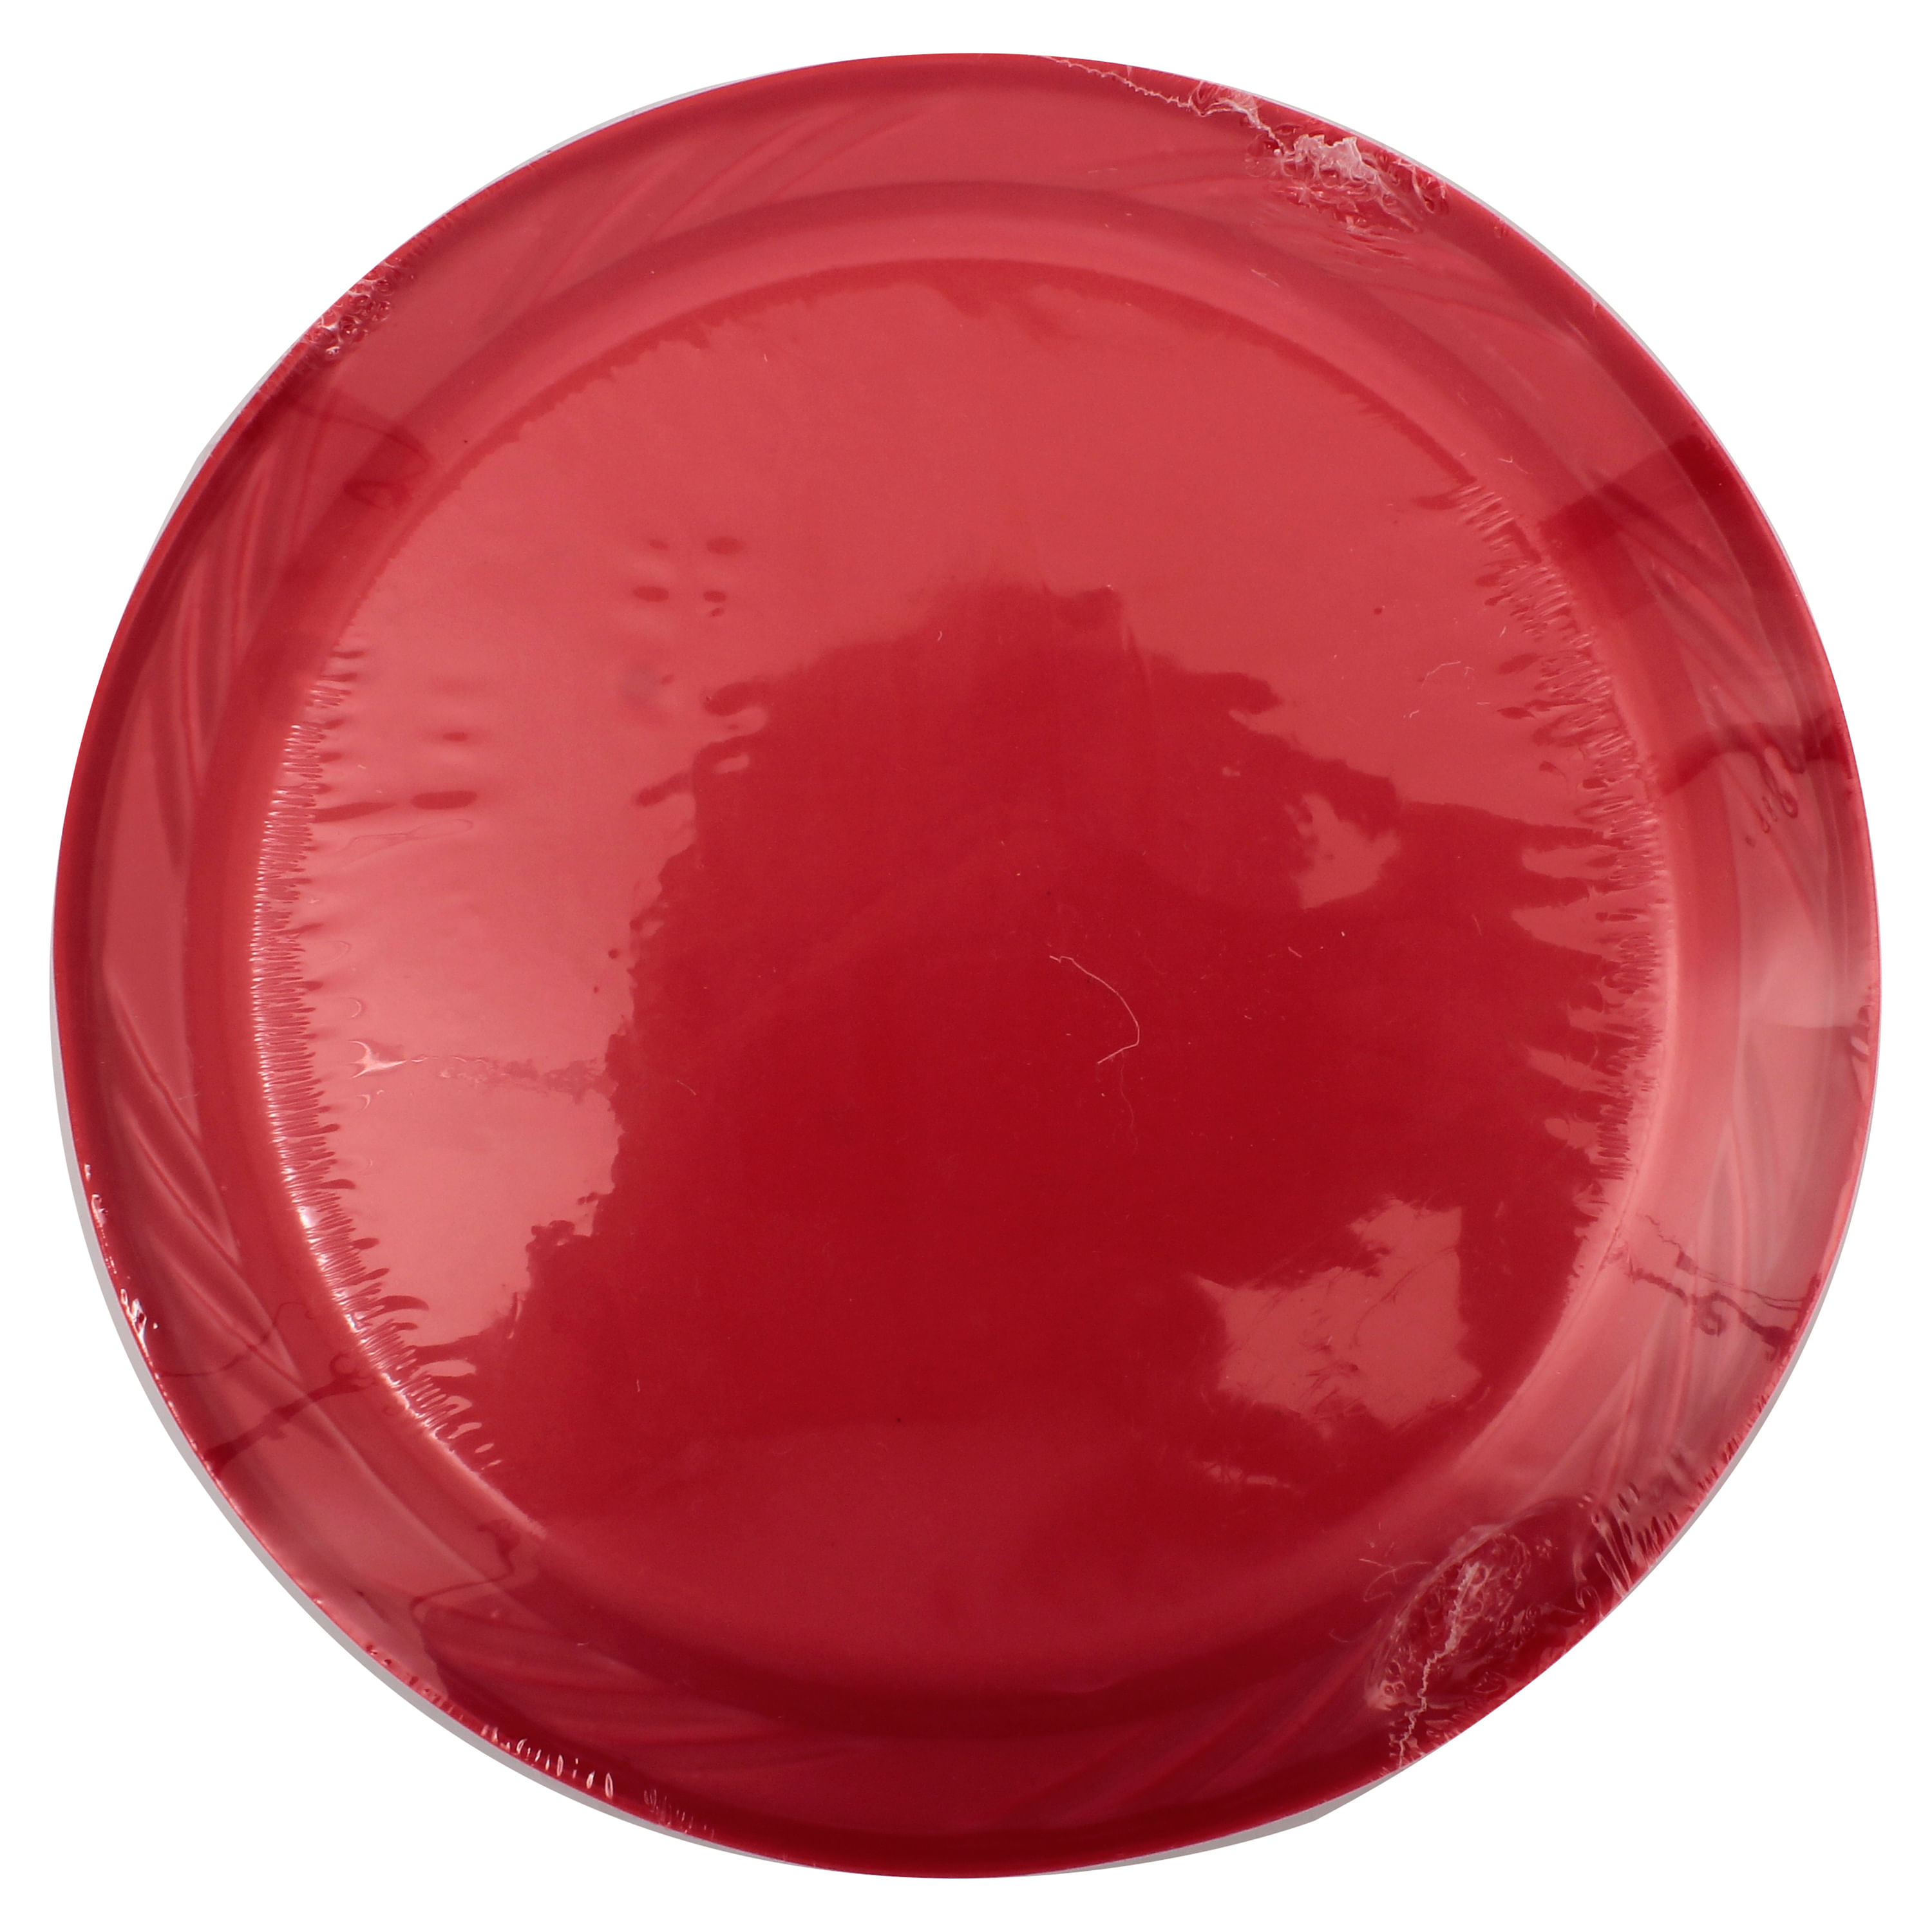 Porta Plato Rojo 33x33cm  Almacenes Boyacá .:variedad y calidad que  impresionan:.